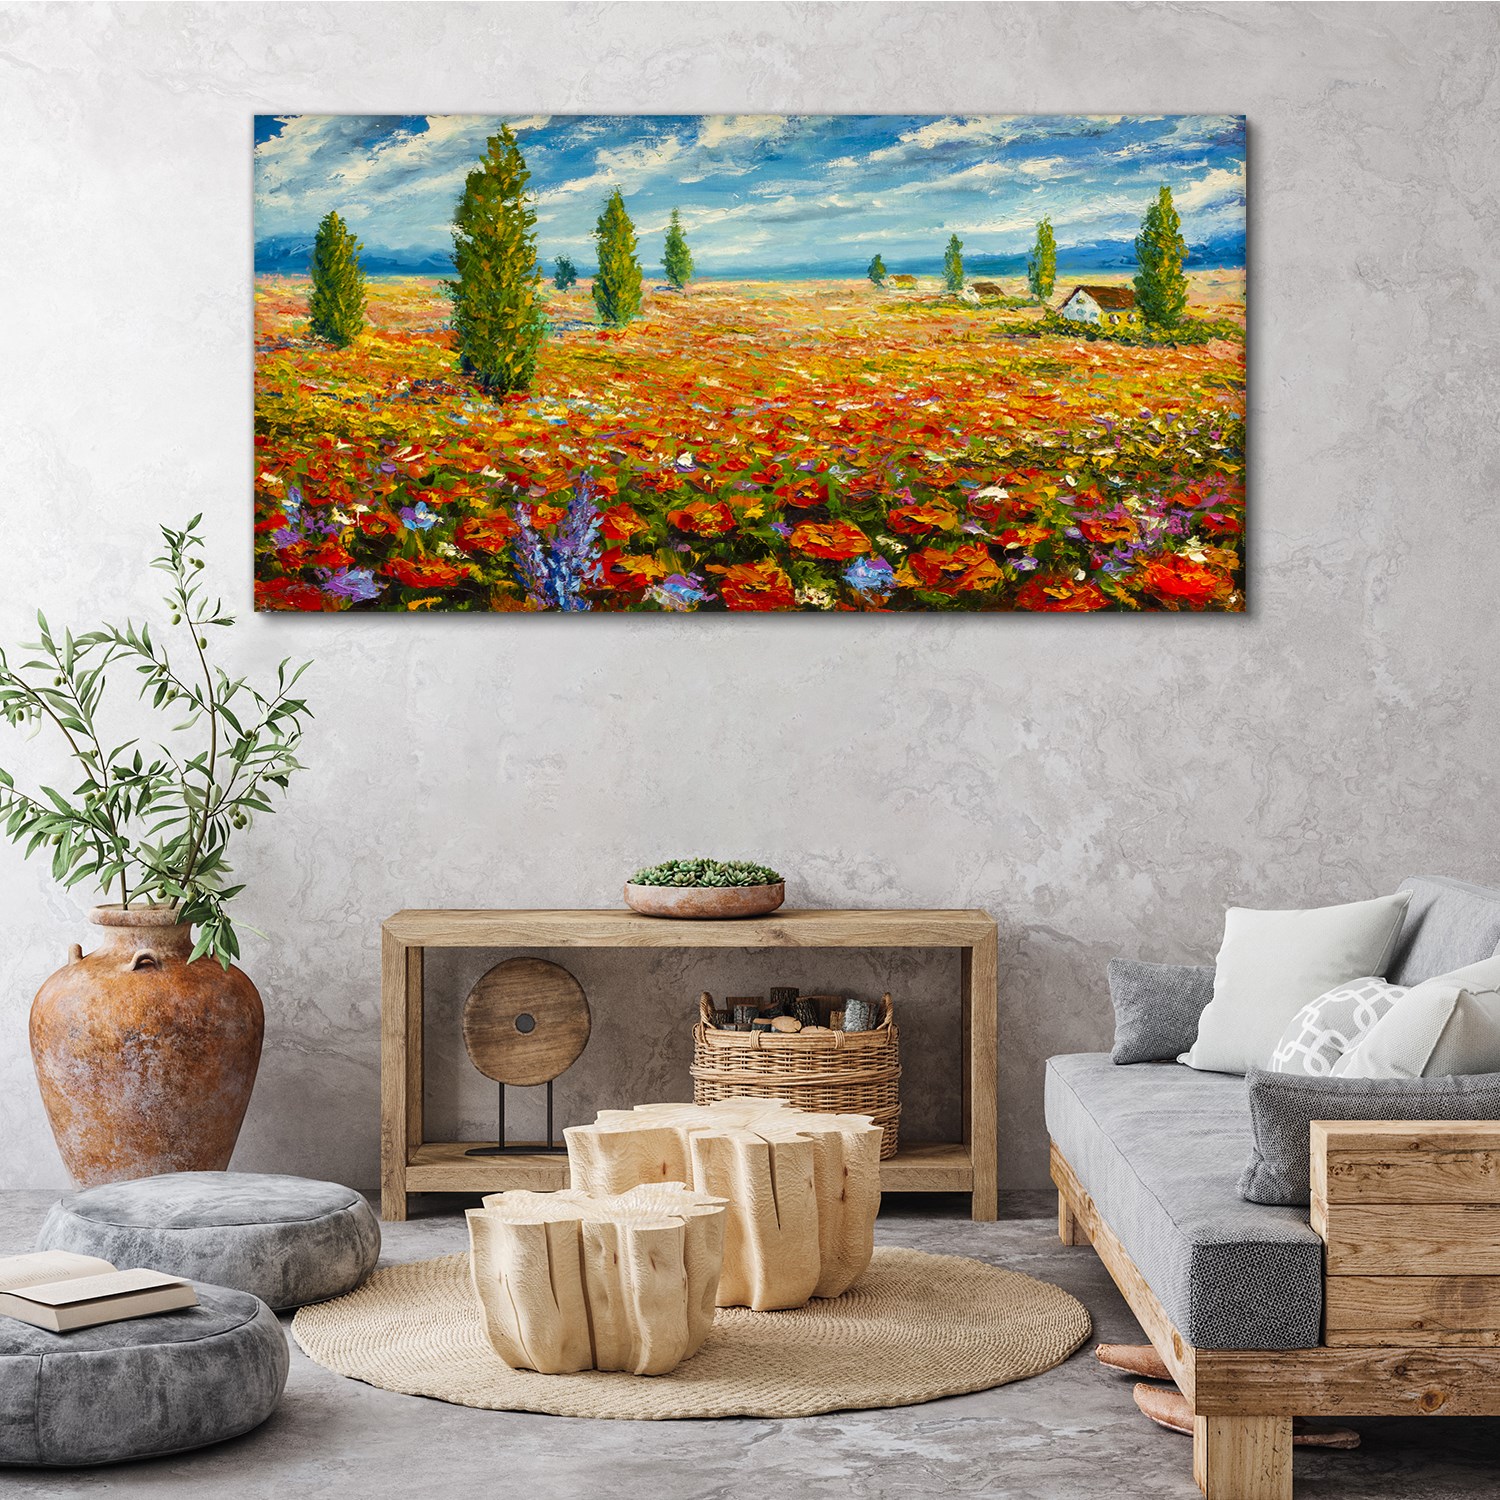 Bilder Leinwand Canvas Wandbild Bunt Feld | eBay 140x70 Ölgemälde Blumen